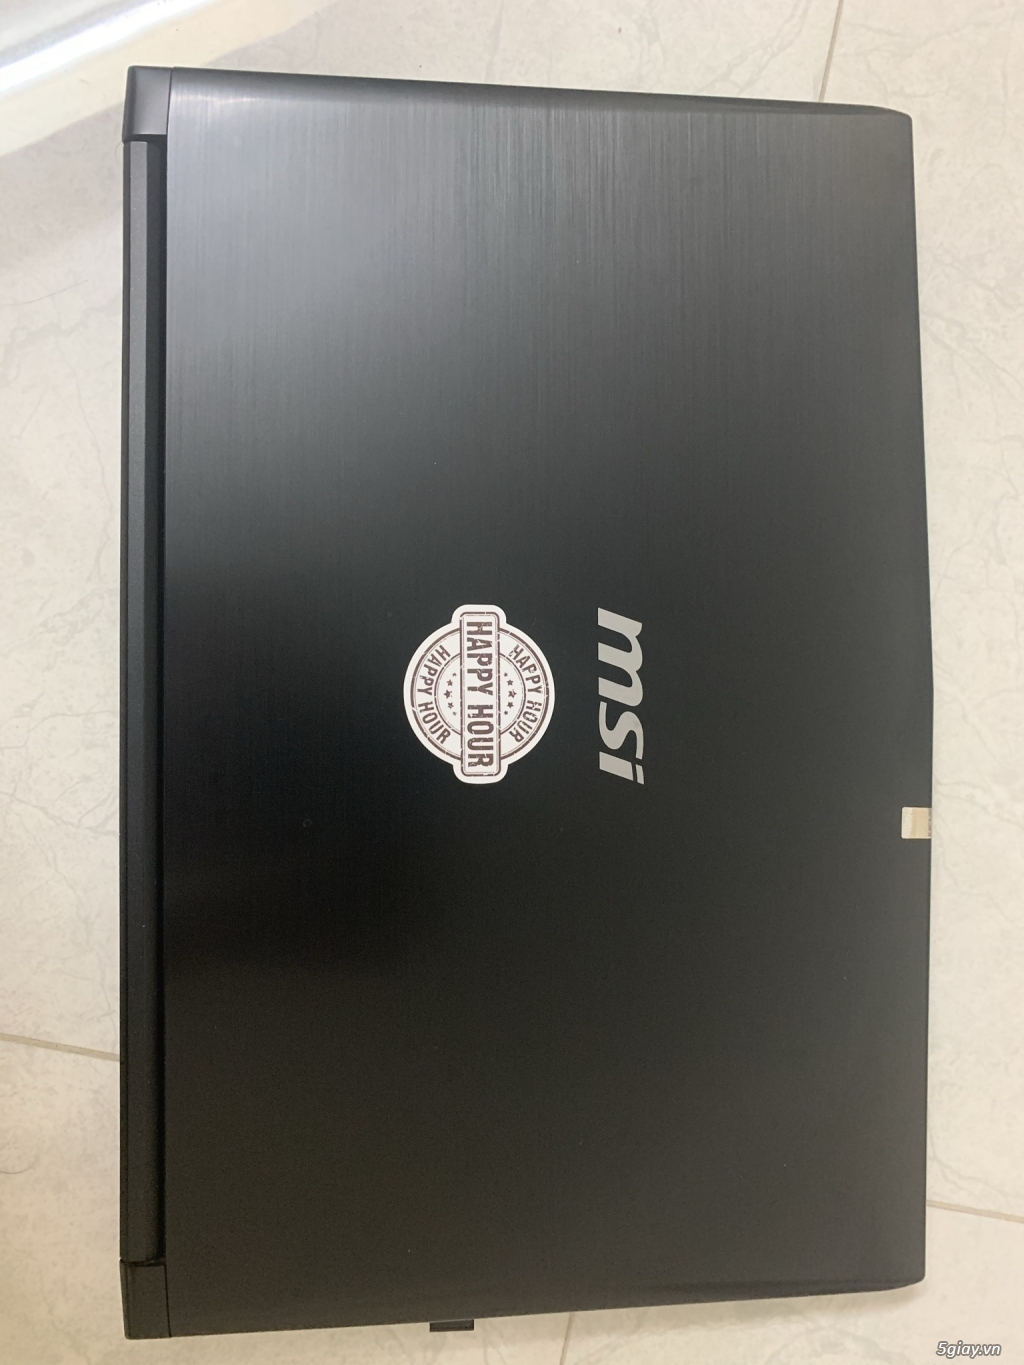 Cần bán: Laptop MSI CX Series - 3